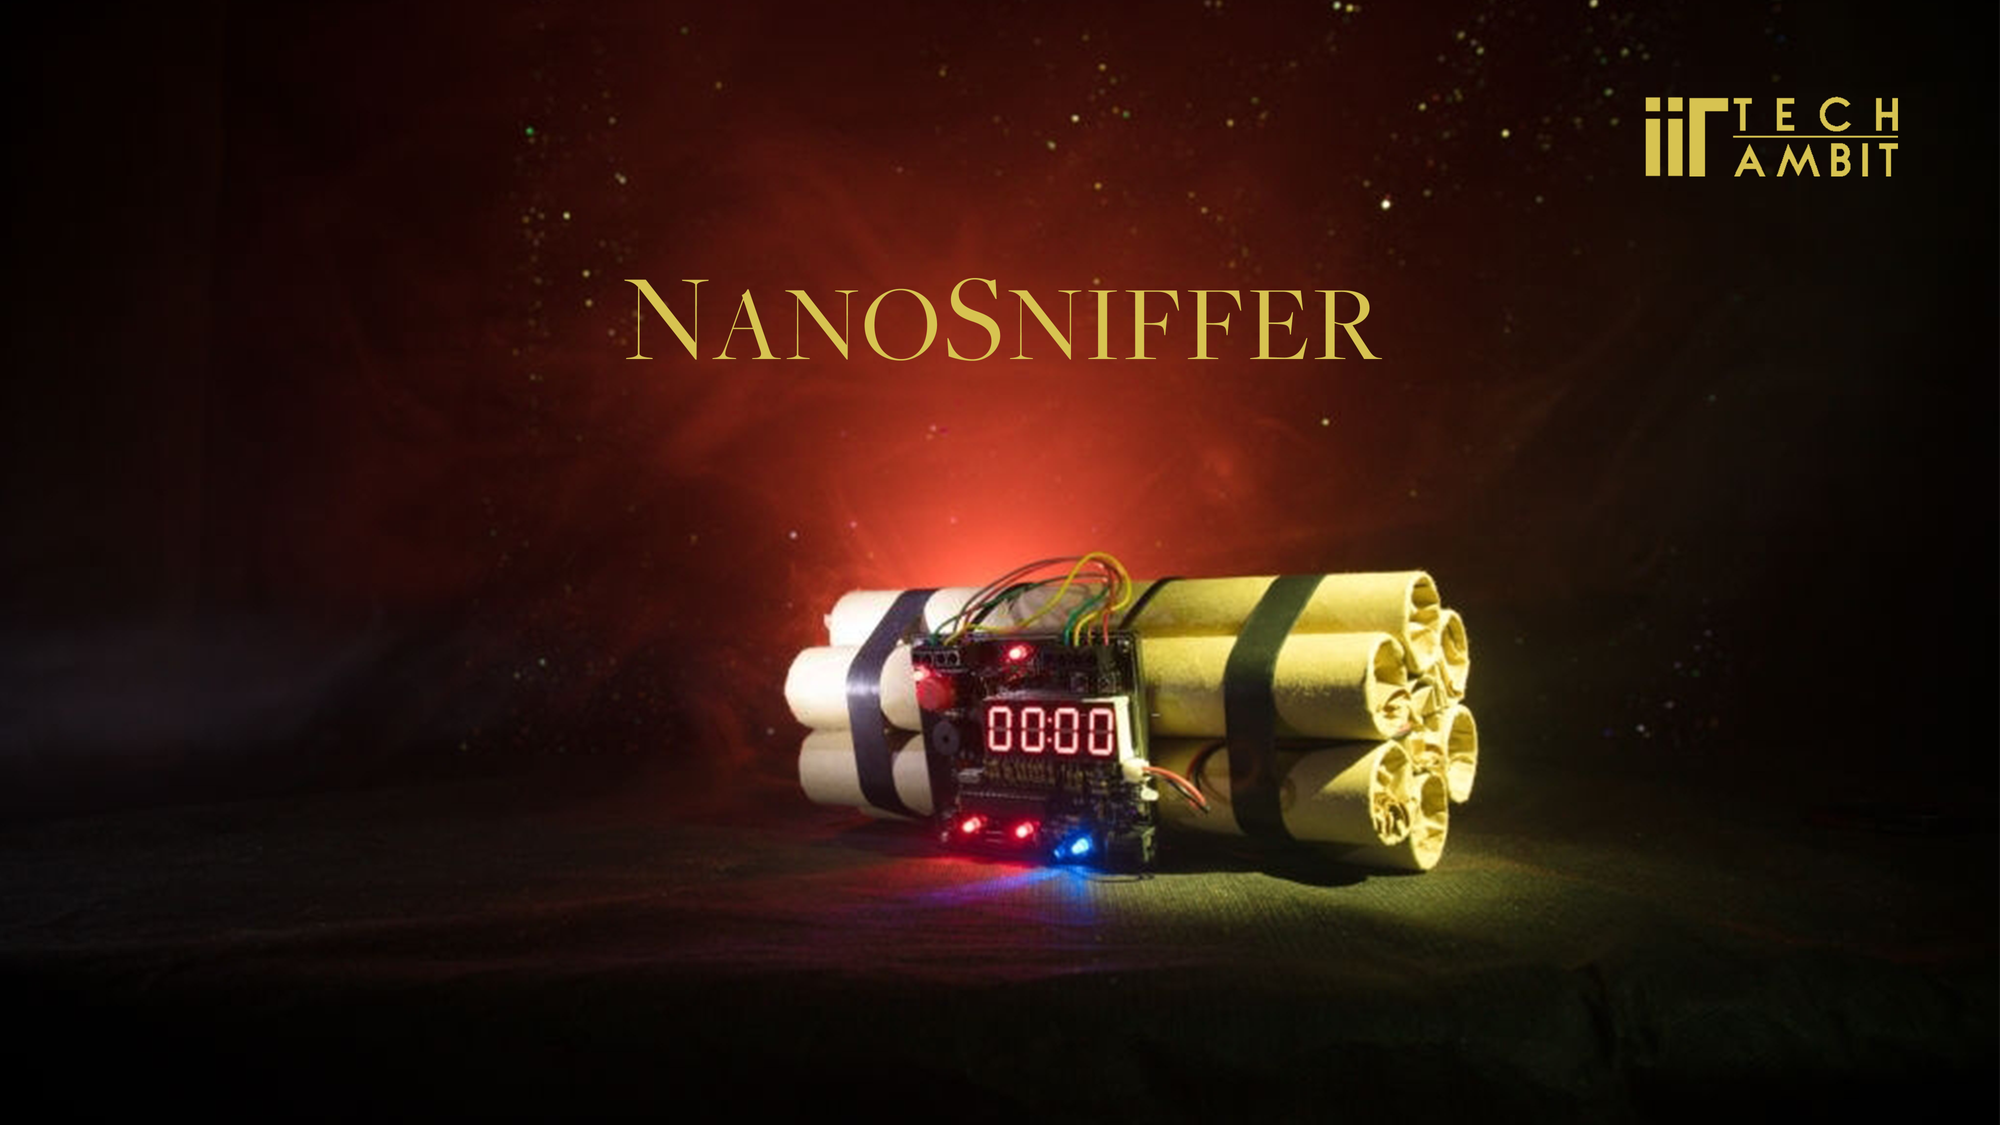 NanoSniffer